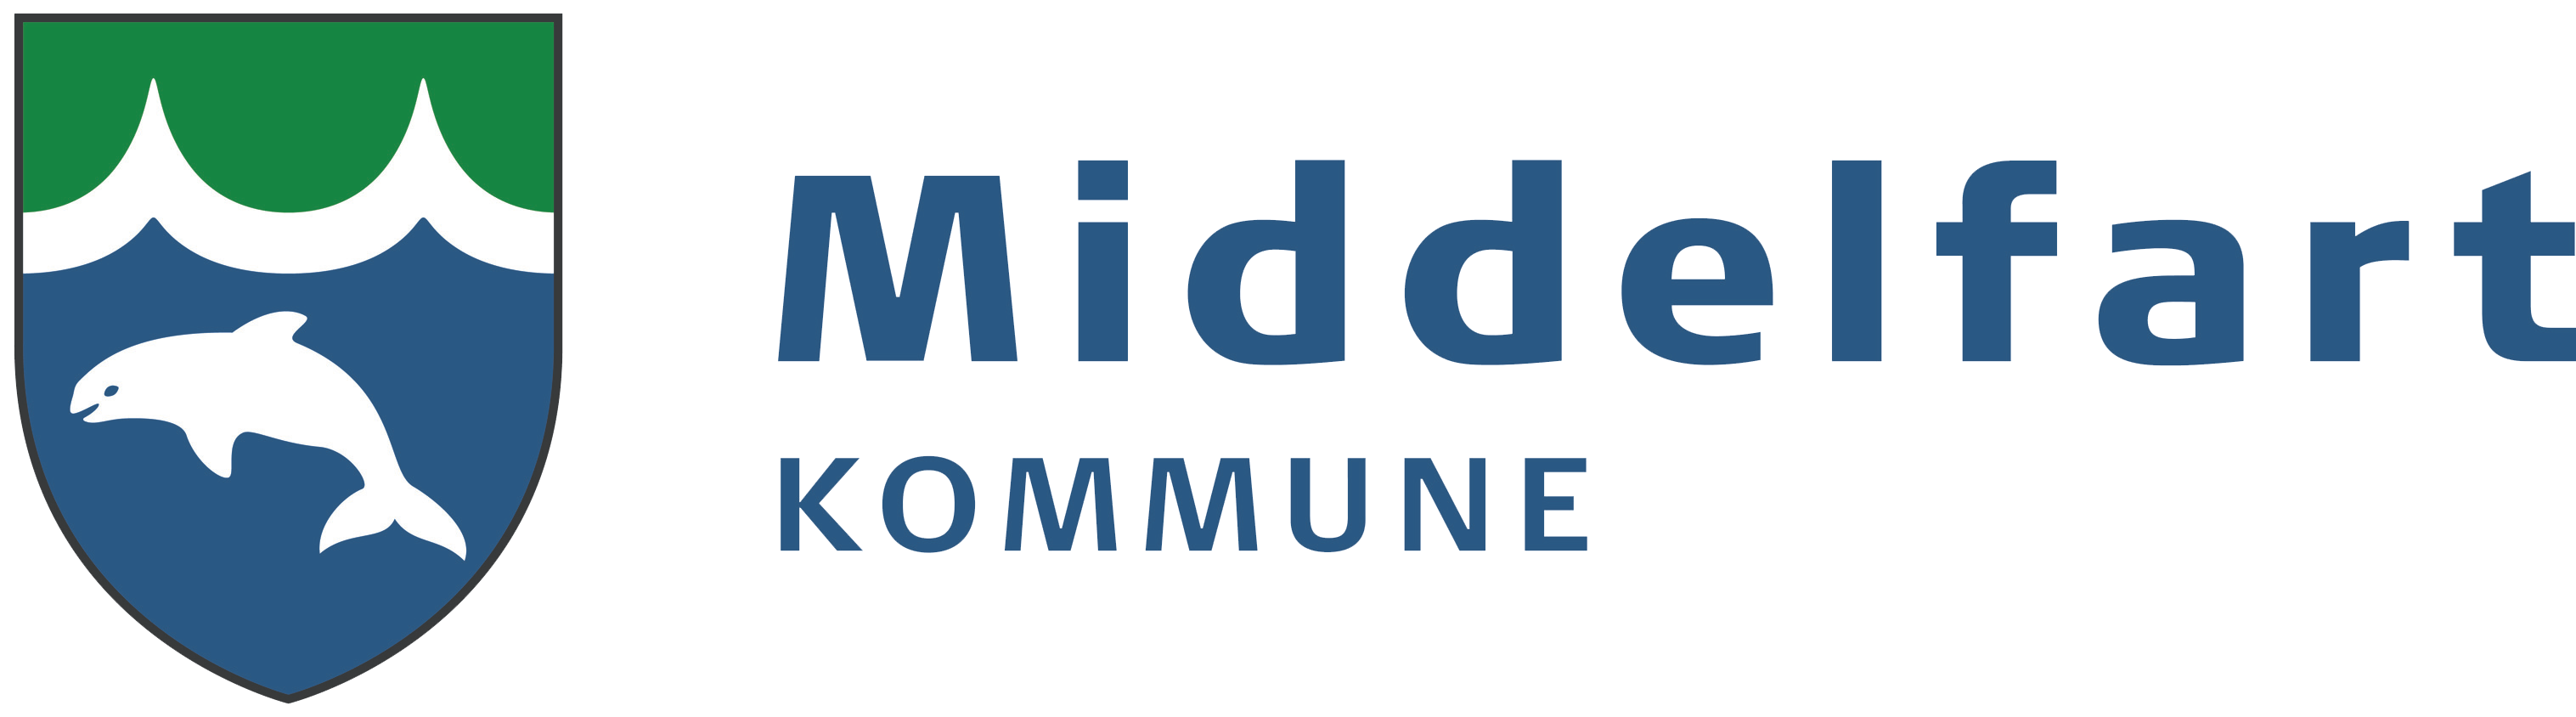 Logo for Middelfart Kommune